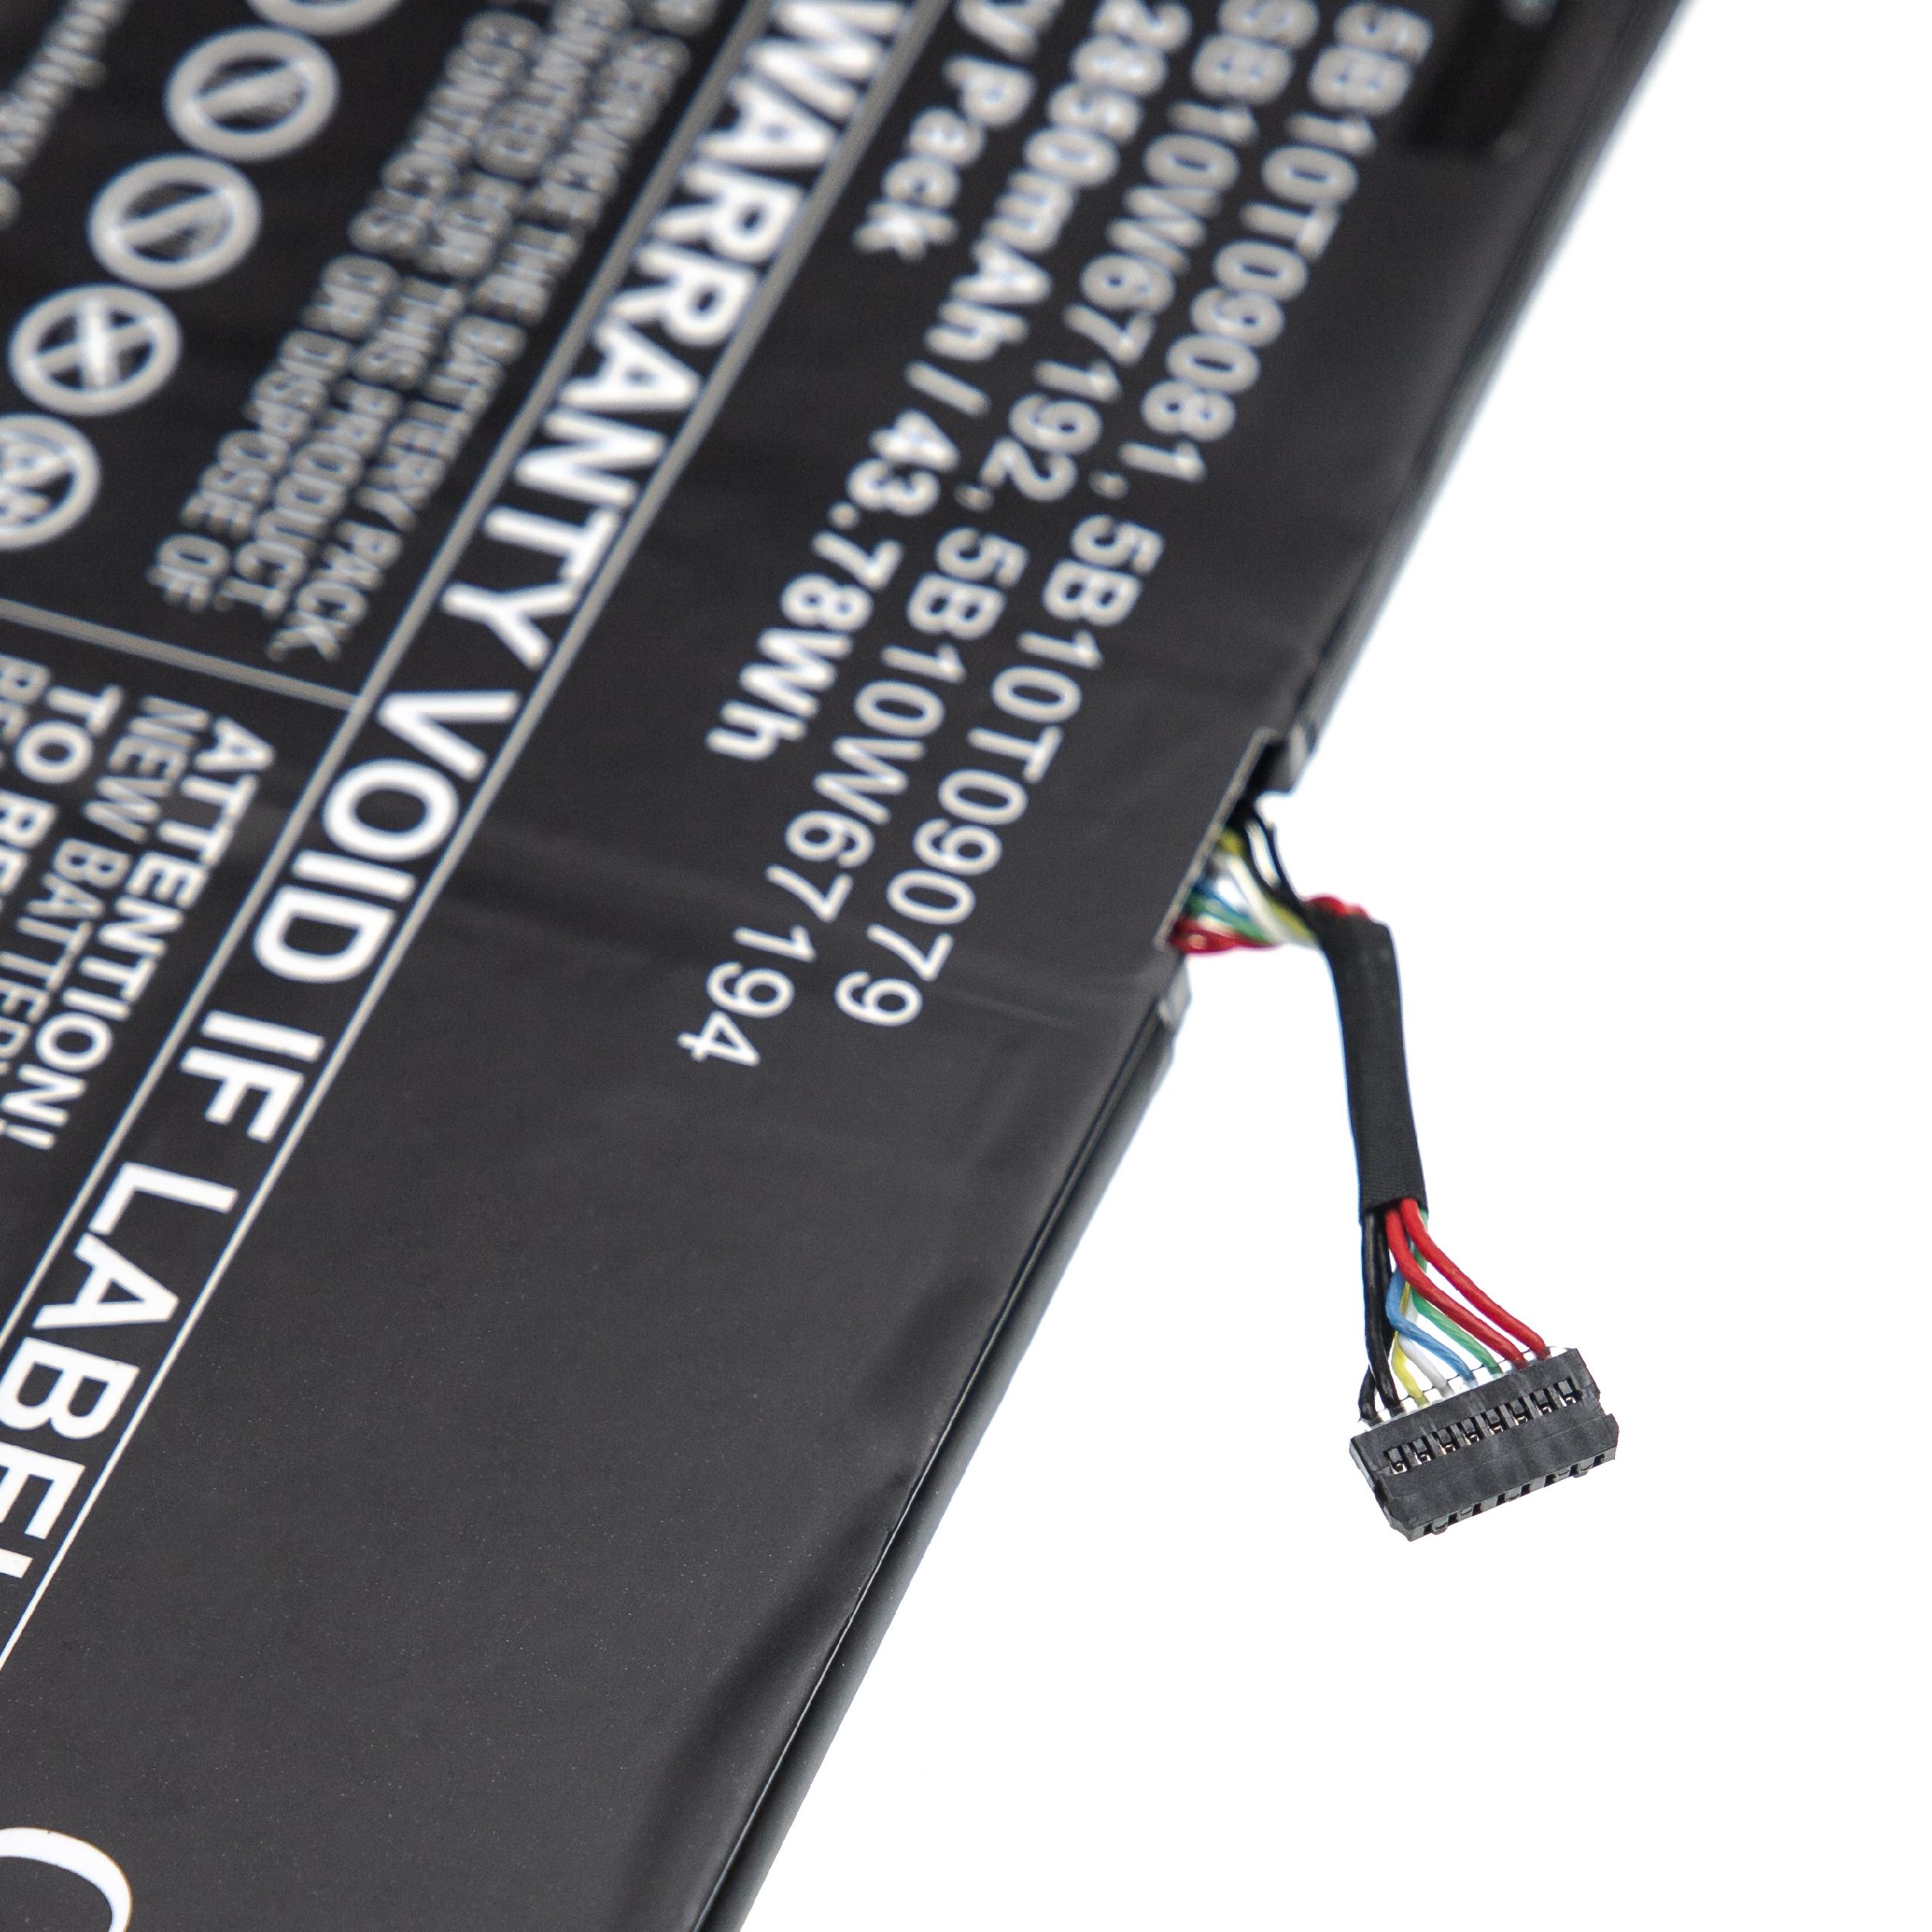 Batterie remplace Lenovo 5B10T09081, 5B10T09079 pour ordinateur portable - 2850mAh 15,36V Li-polymère